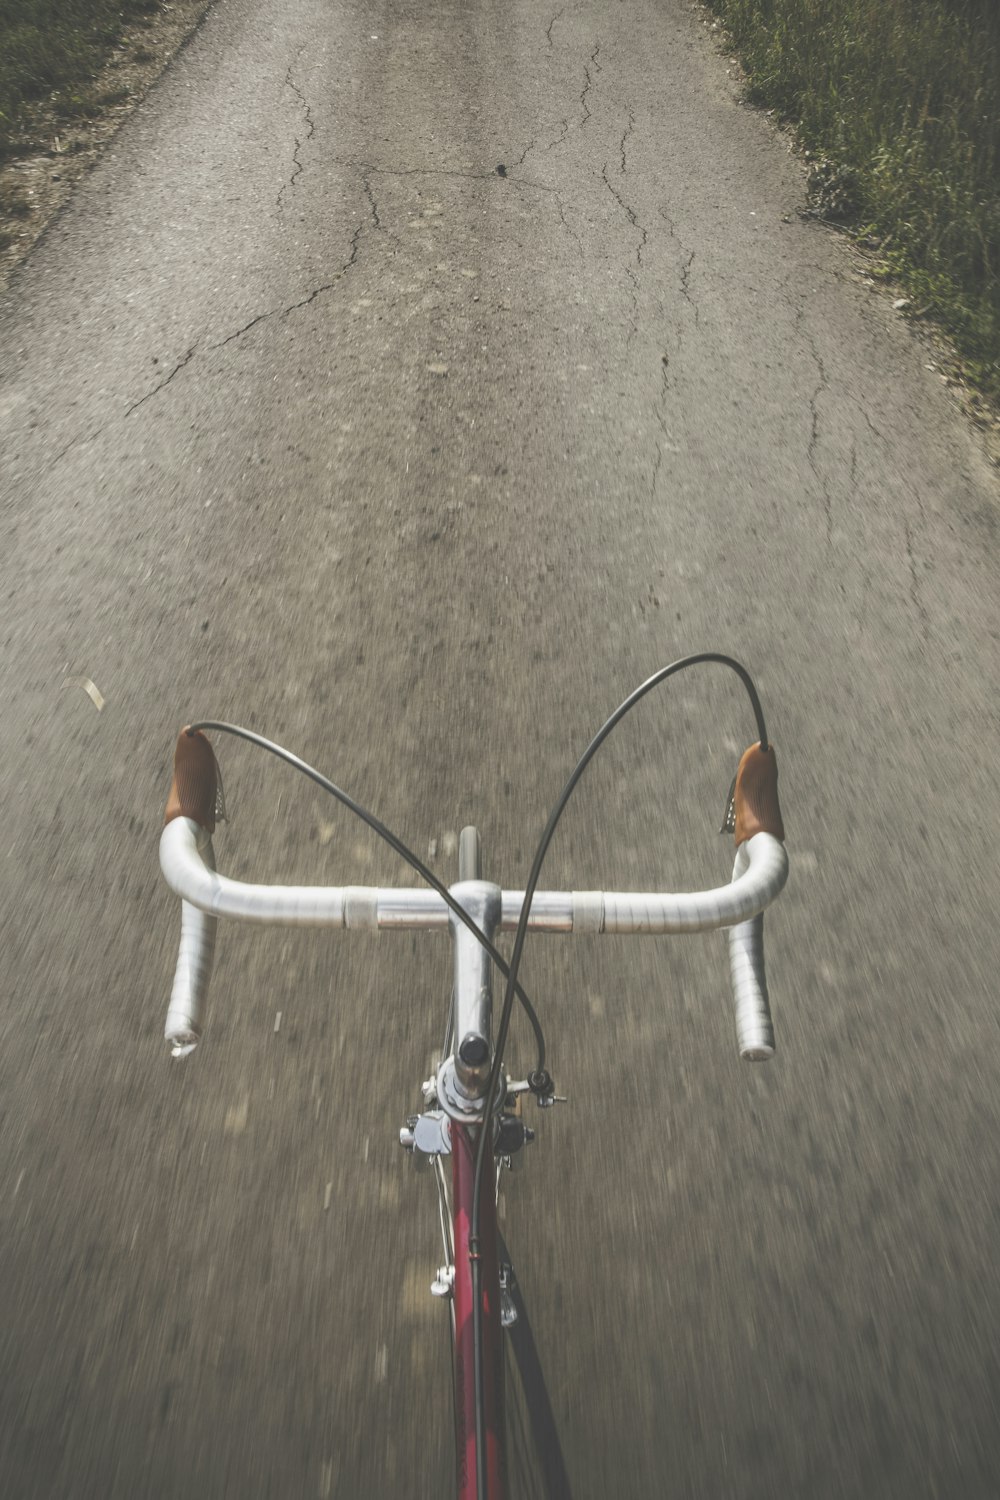 bicicleta de estrada cinza e vermelha entre a grama